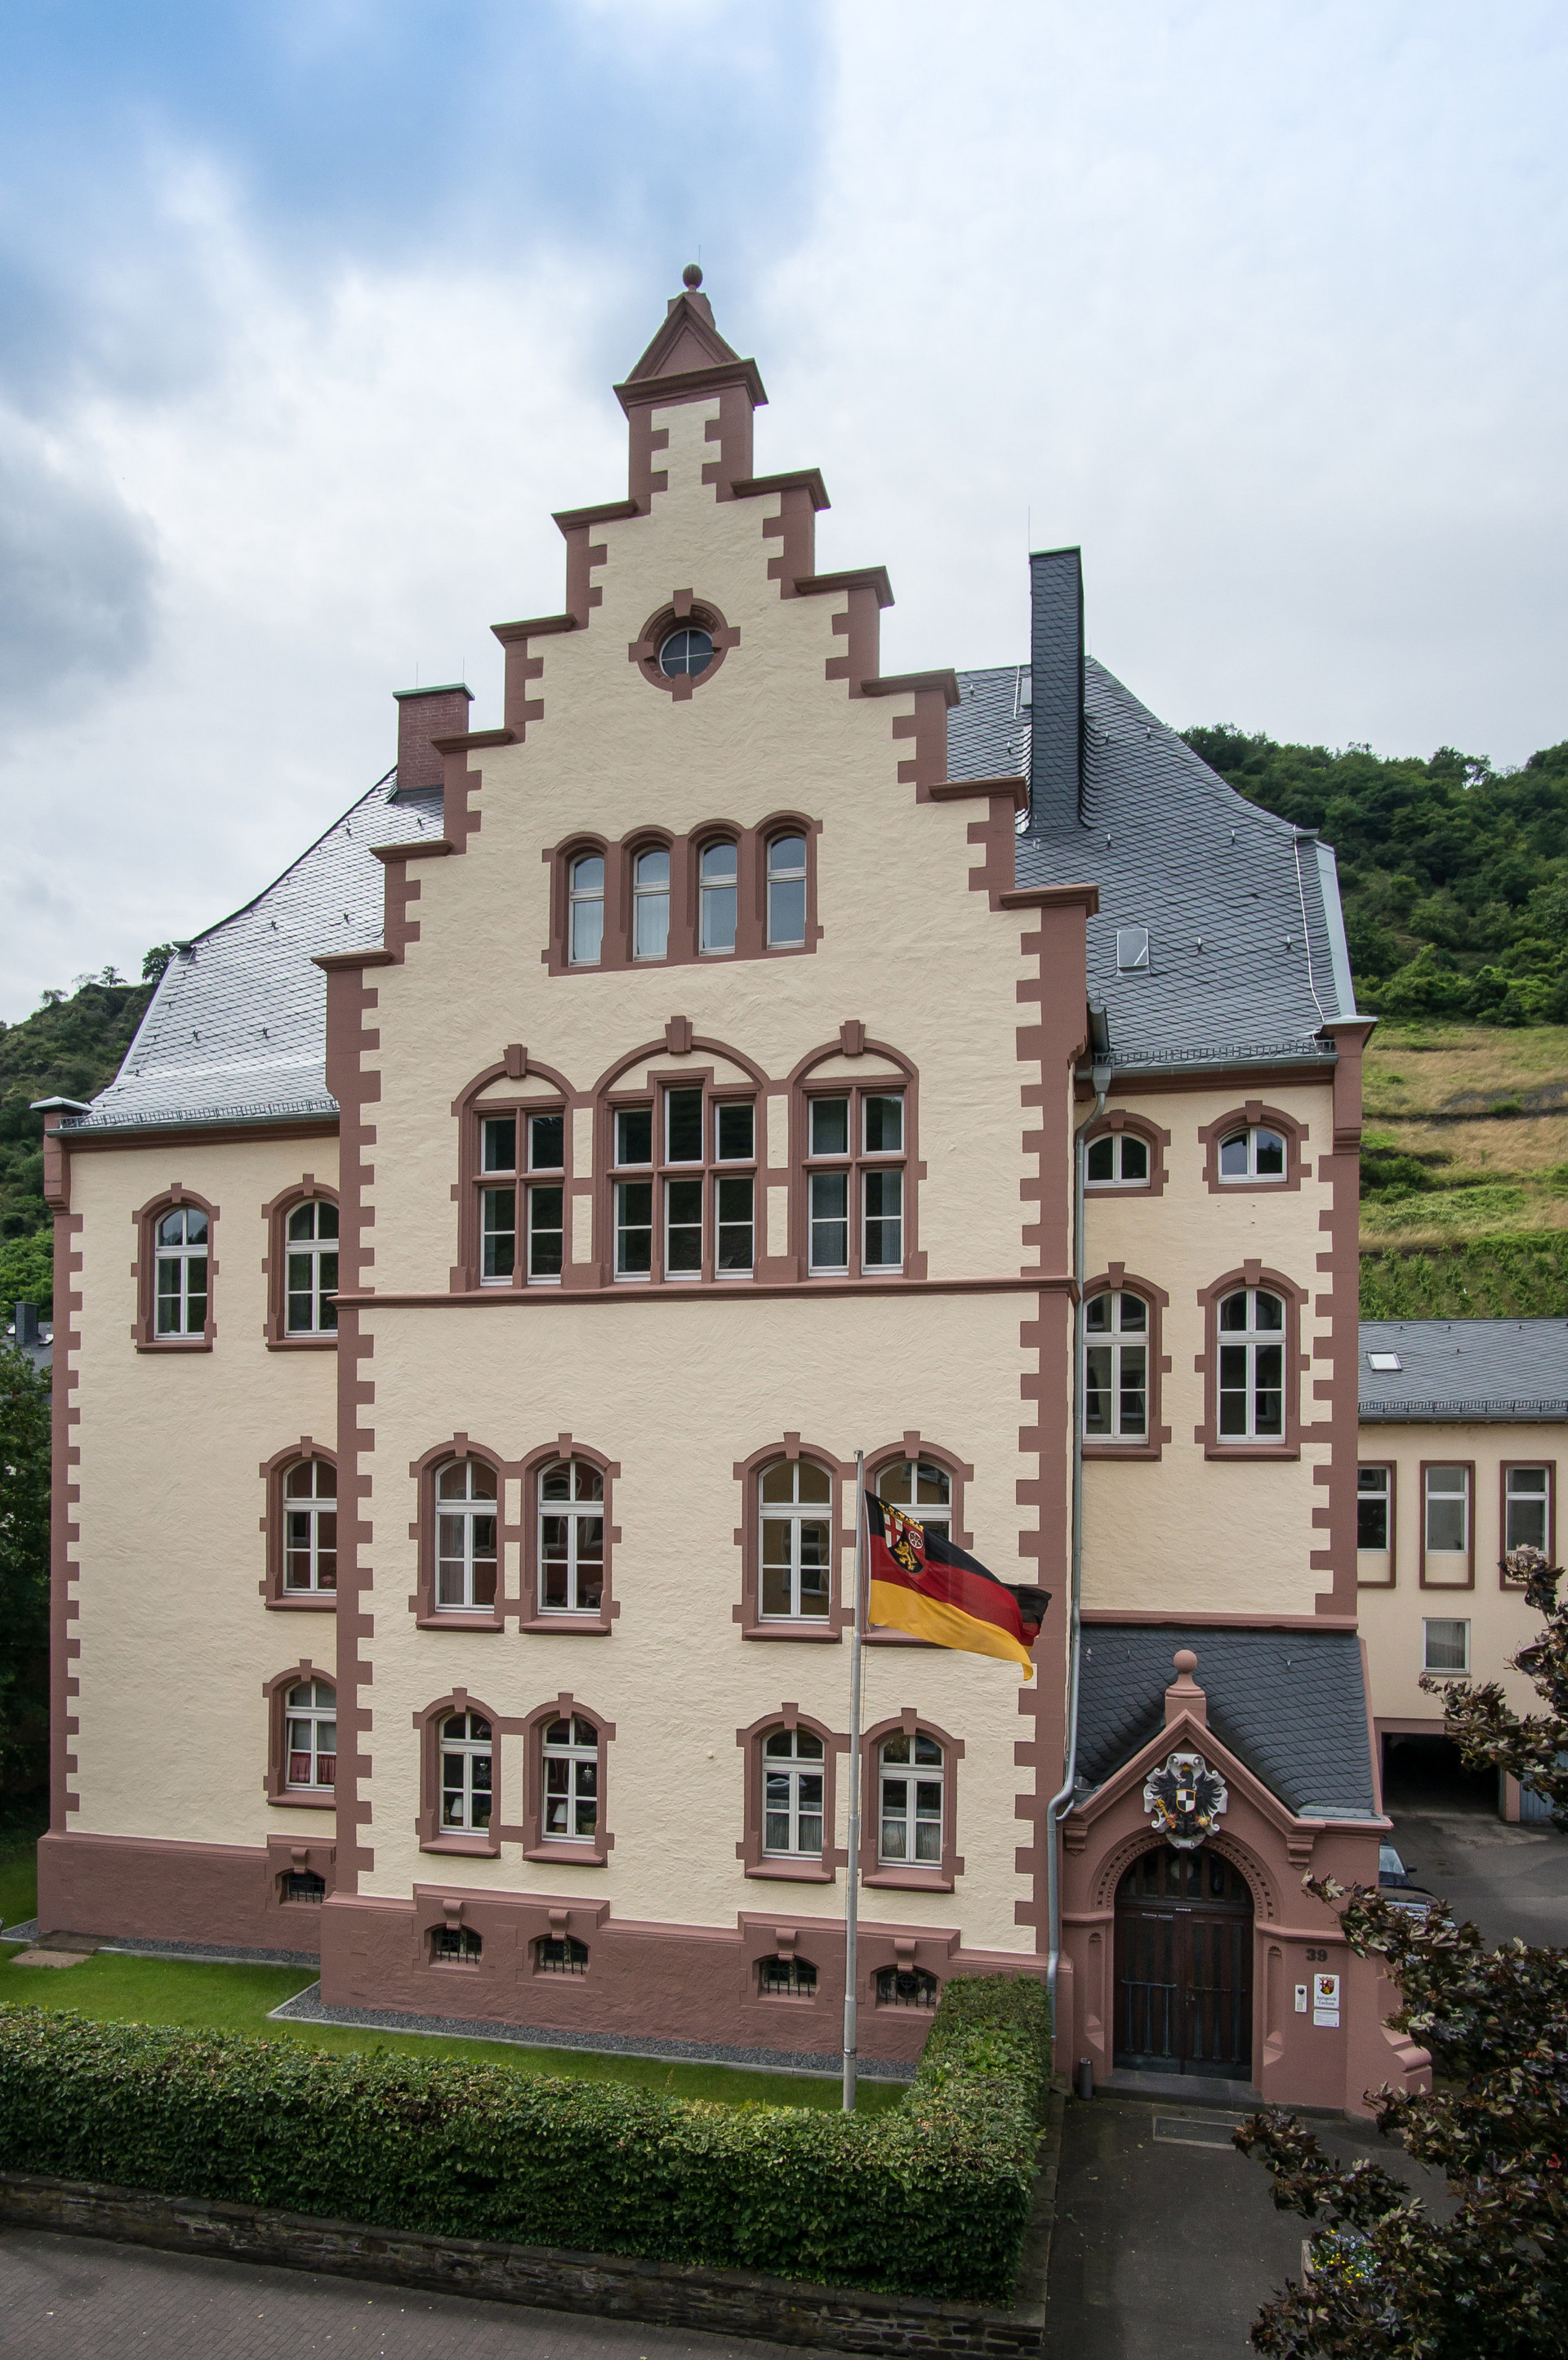 Dienstgebäude des Amtsgerichts Cochem mit Landesflagge Rheinland-Pfalz